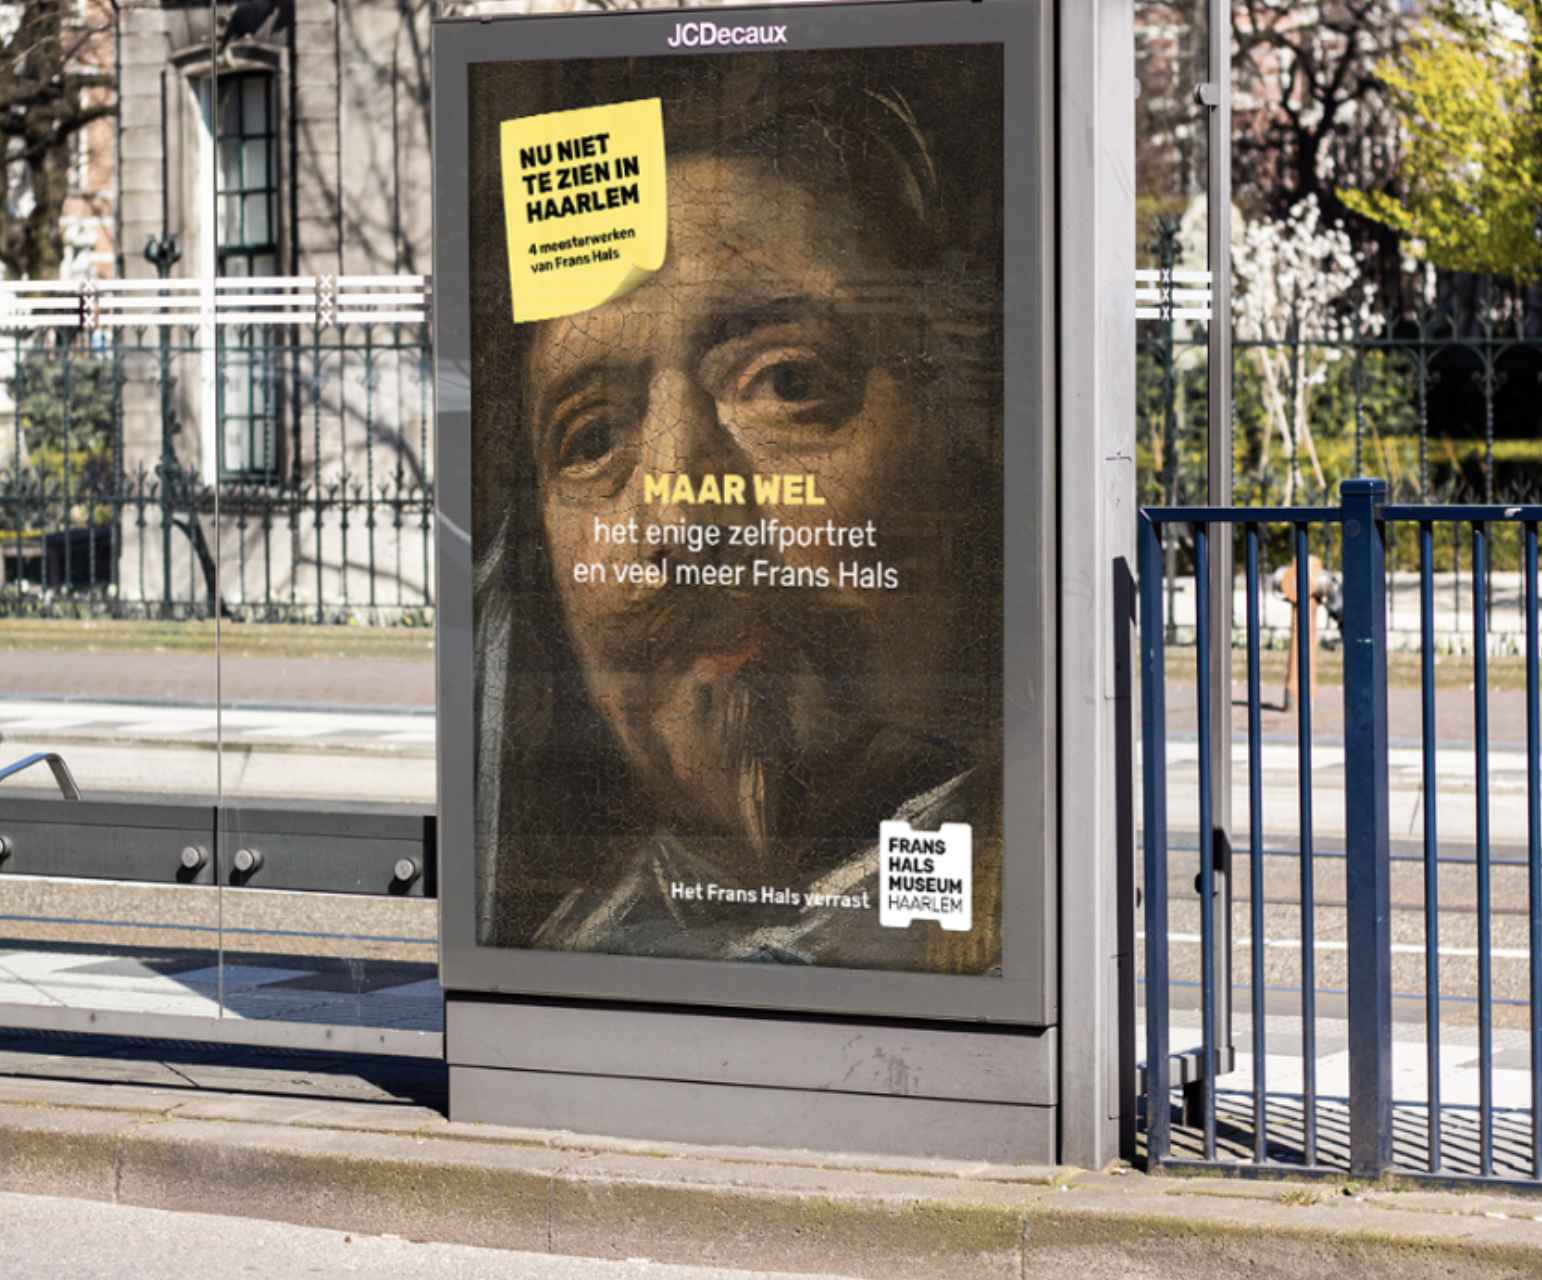 Campagne ‘Nu niet te zien’ van het Frans Hals Museum trekt de aandacht